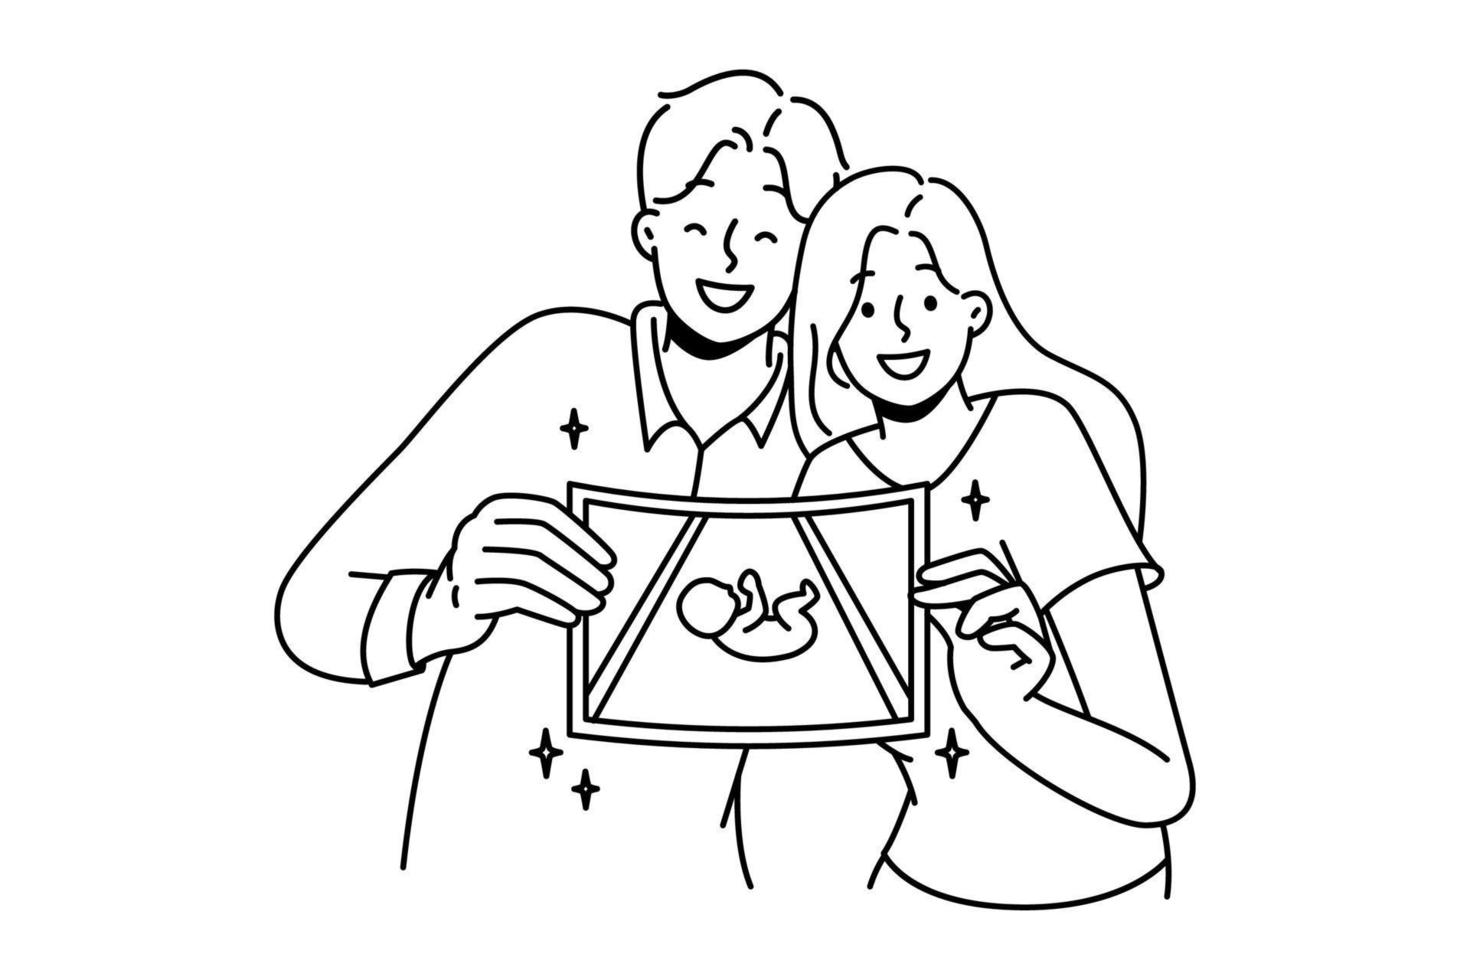 couple heureux montrant une photo d'embryon. un homme et une femme souriants démontrent une échographie de bébé excité par la grossesse et la parentalité. illustration vectorielle. vecteur